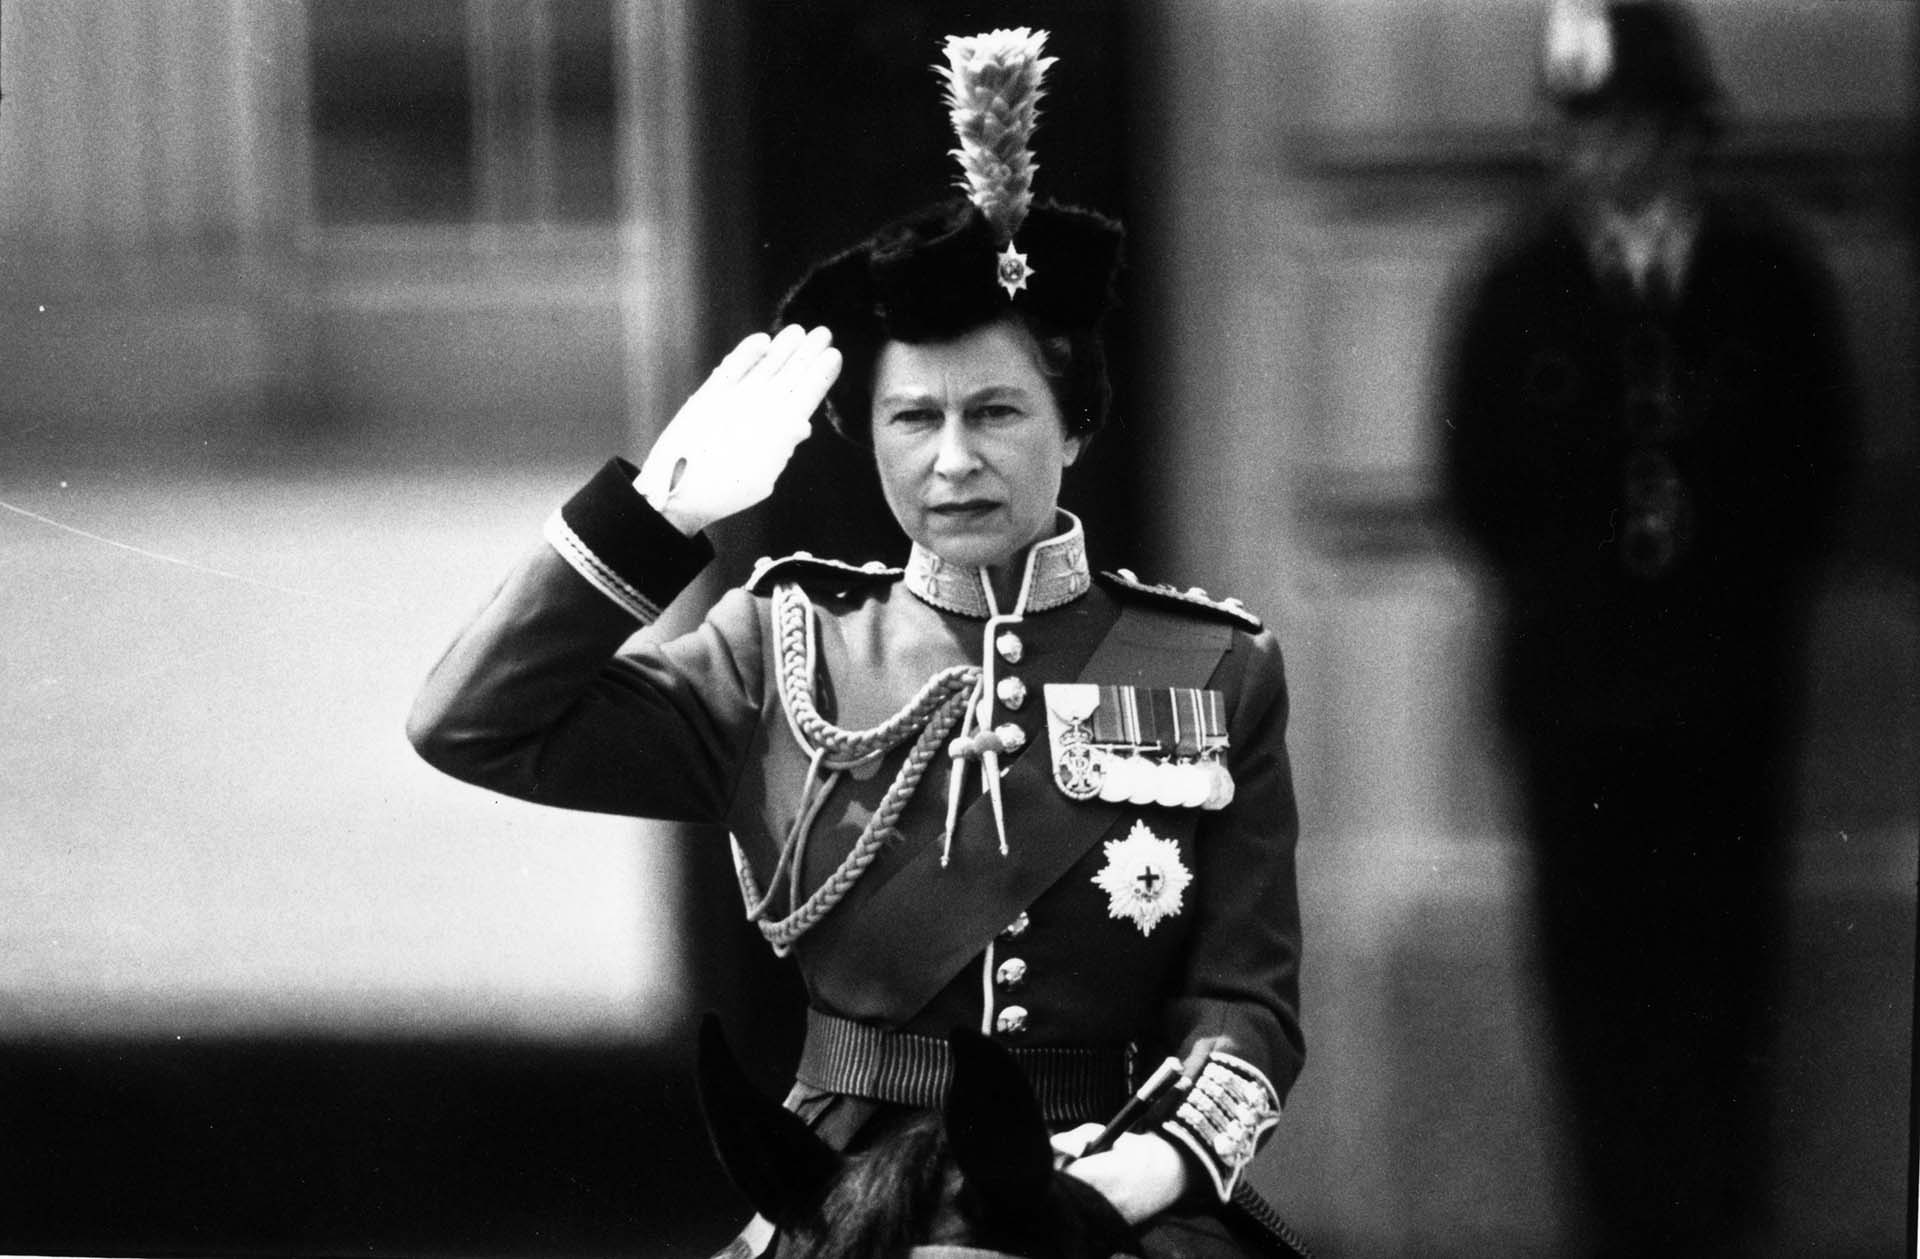 La monarca británica fue conocida también por su afición a los caballos y era una excelente jinete en sus años más jóvenes. (Aubrey Hart/Evening Standard/Getty Images)